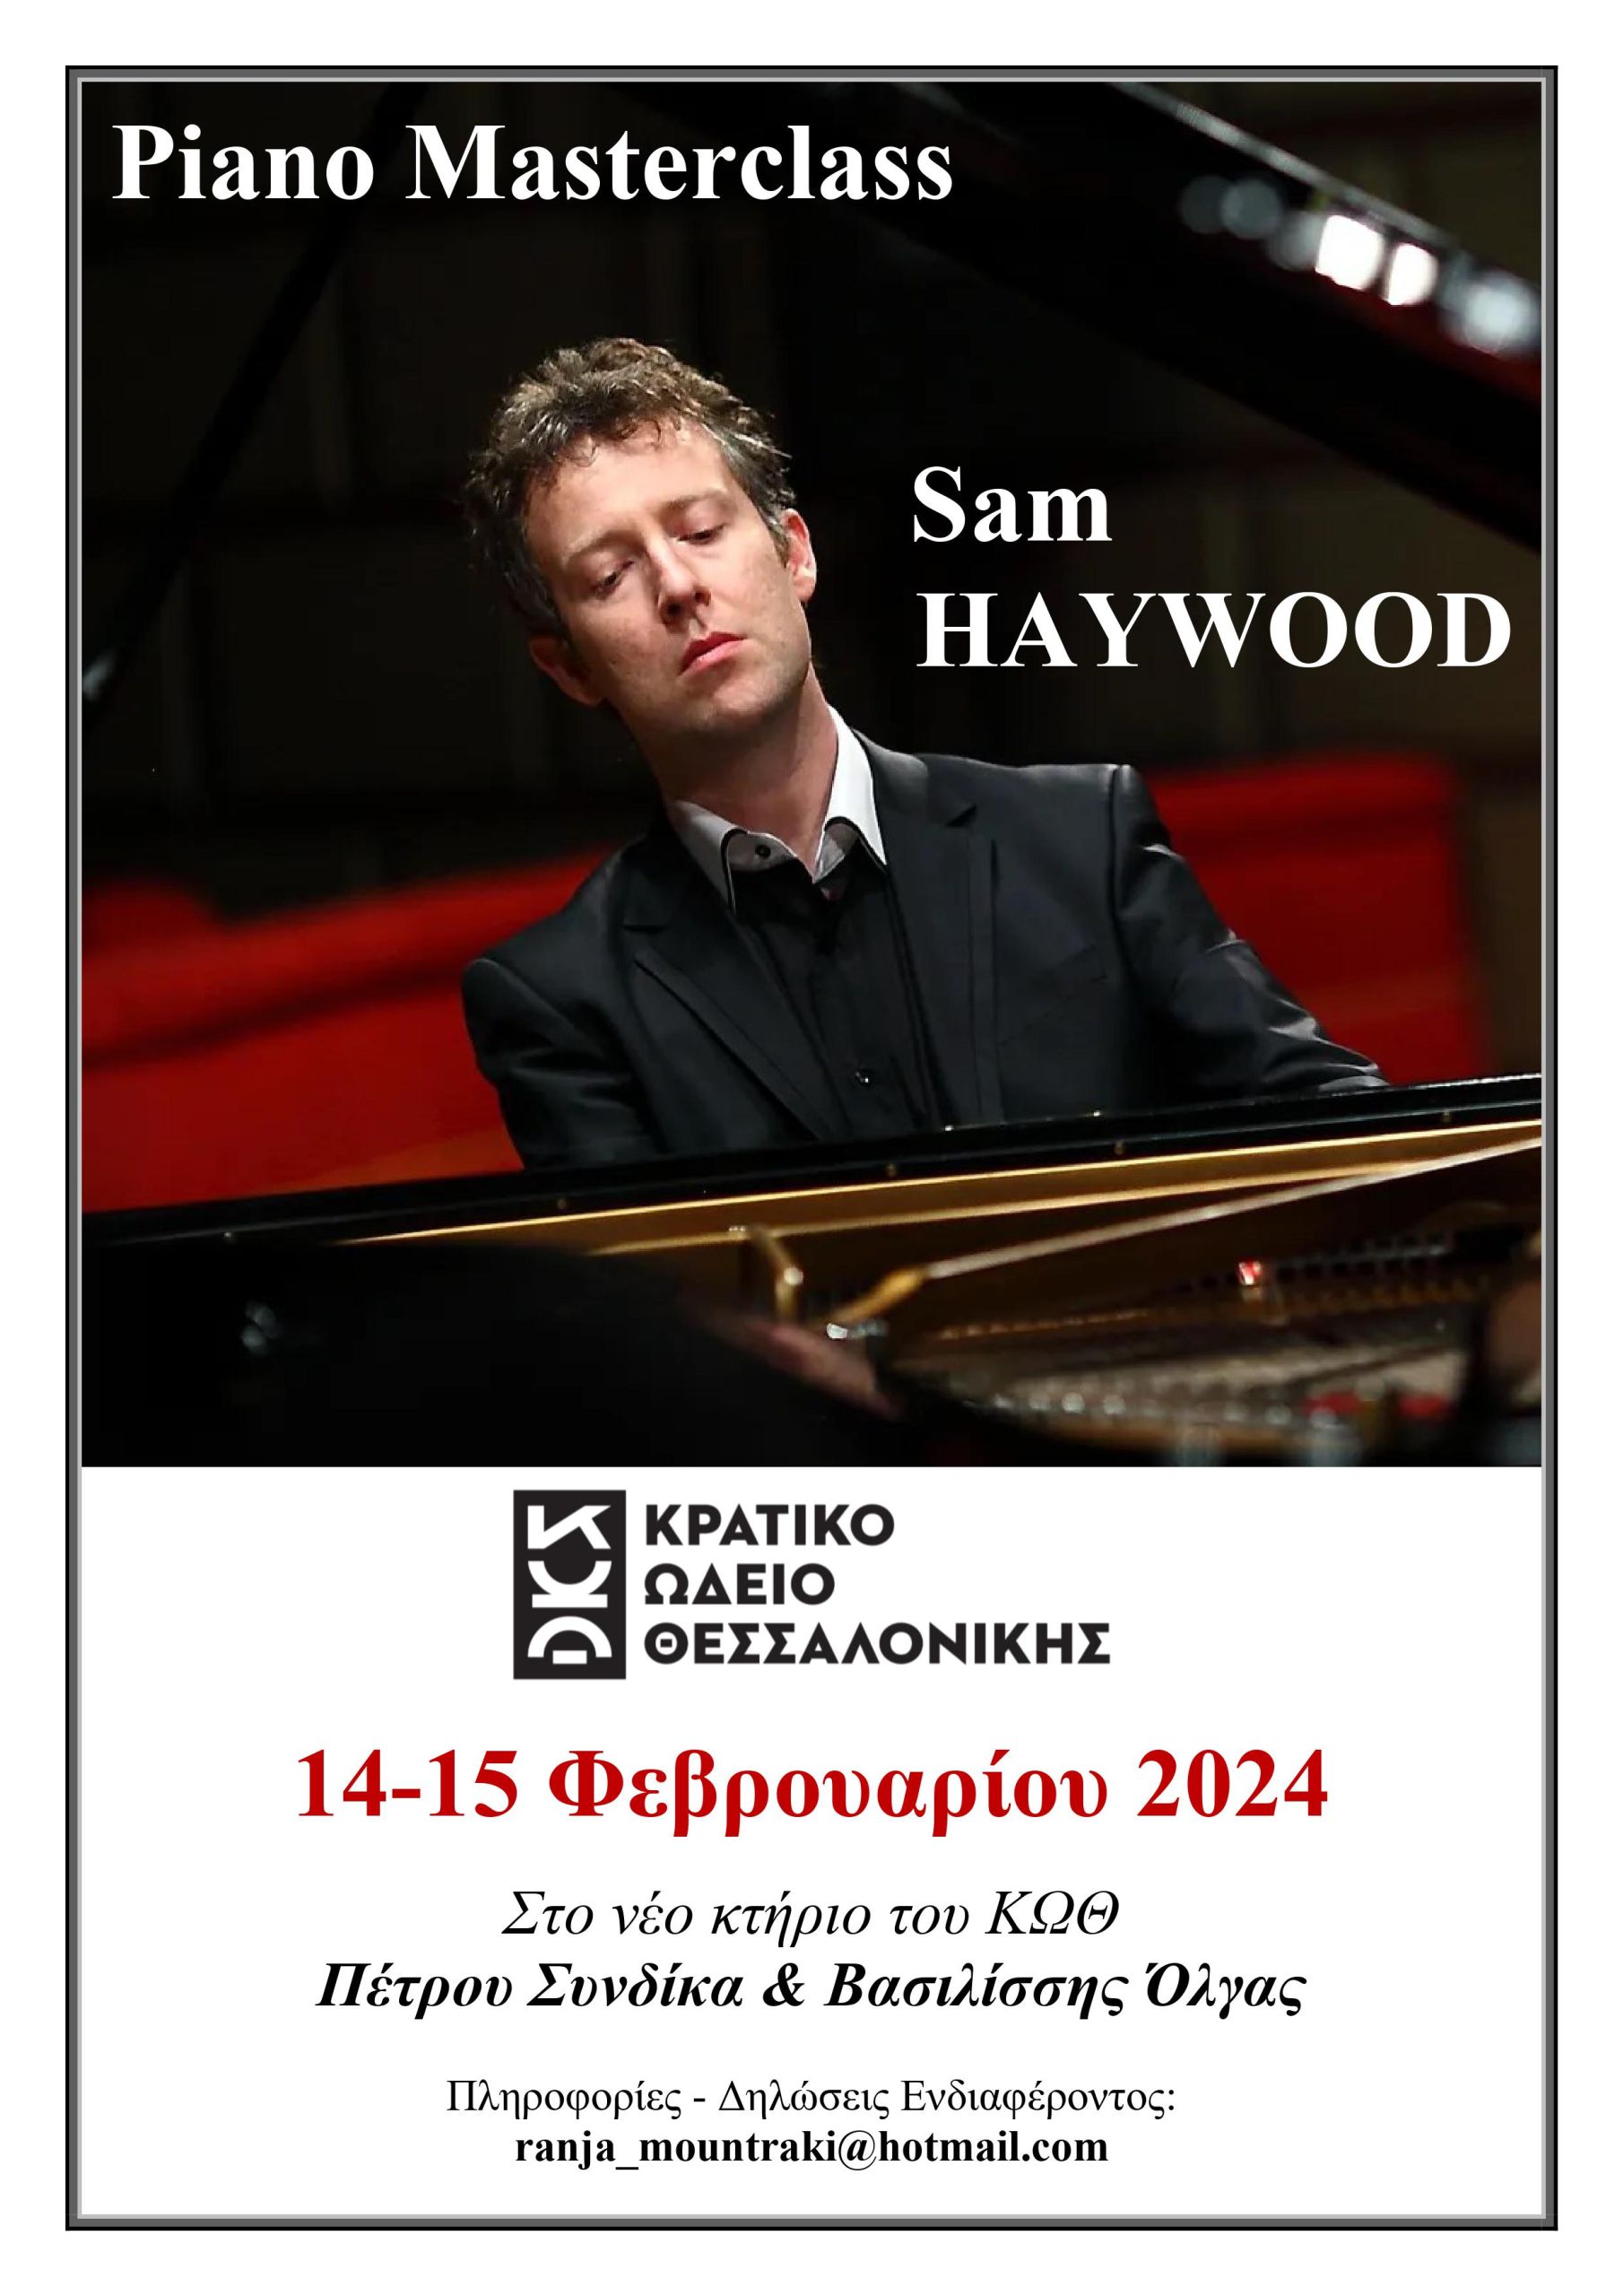 Πιάνο Masterclass - Sam Haywood